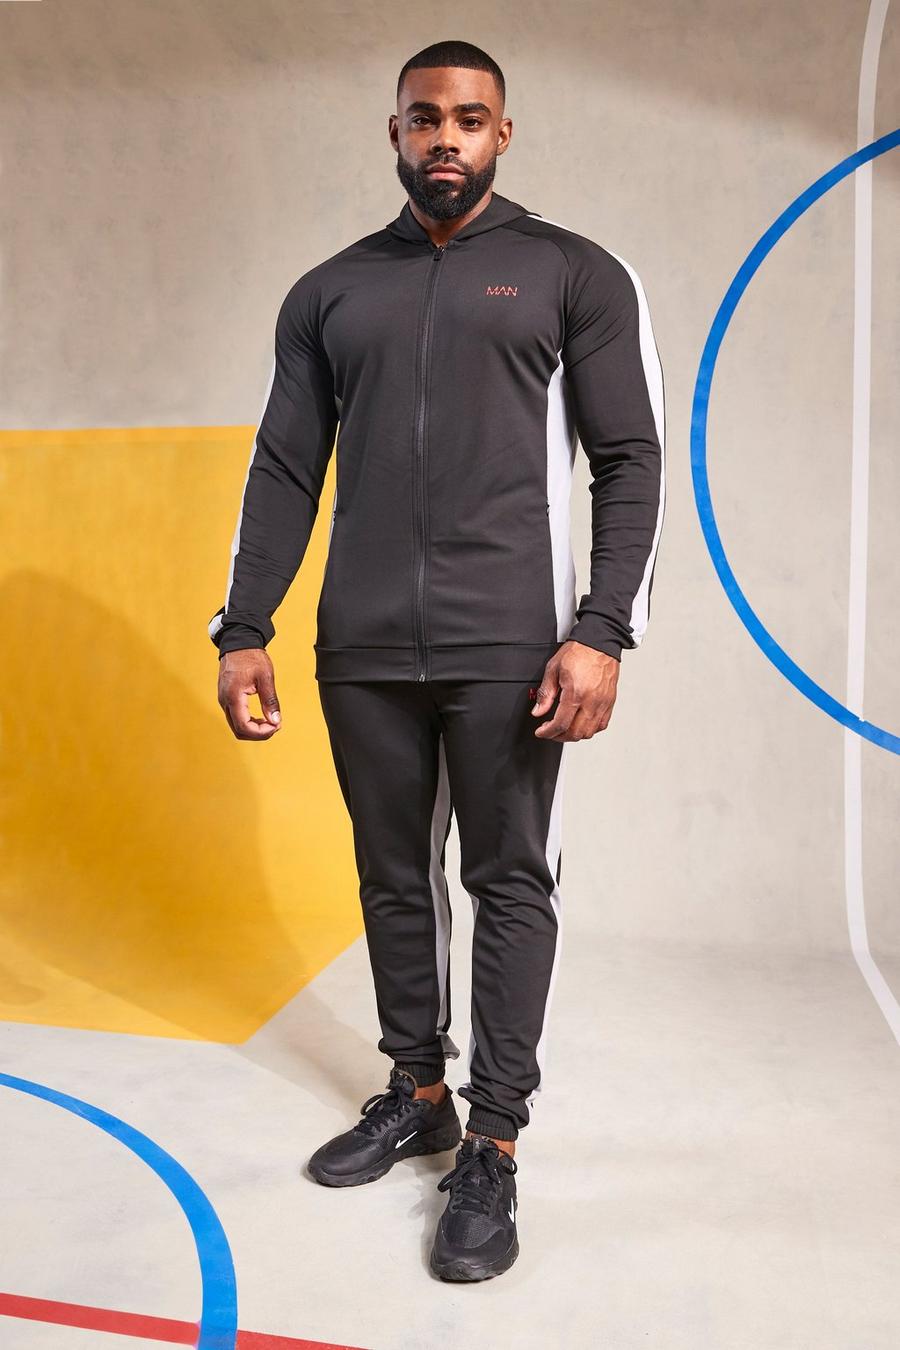 שחור nero חליפת טרנינג ספורטיבית לאימונים עם דוגמת קולור בלוק וכיתוב Man